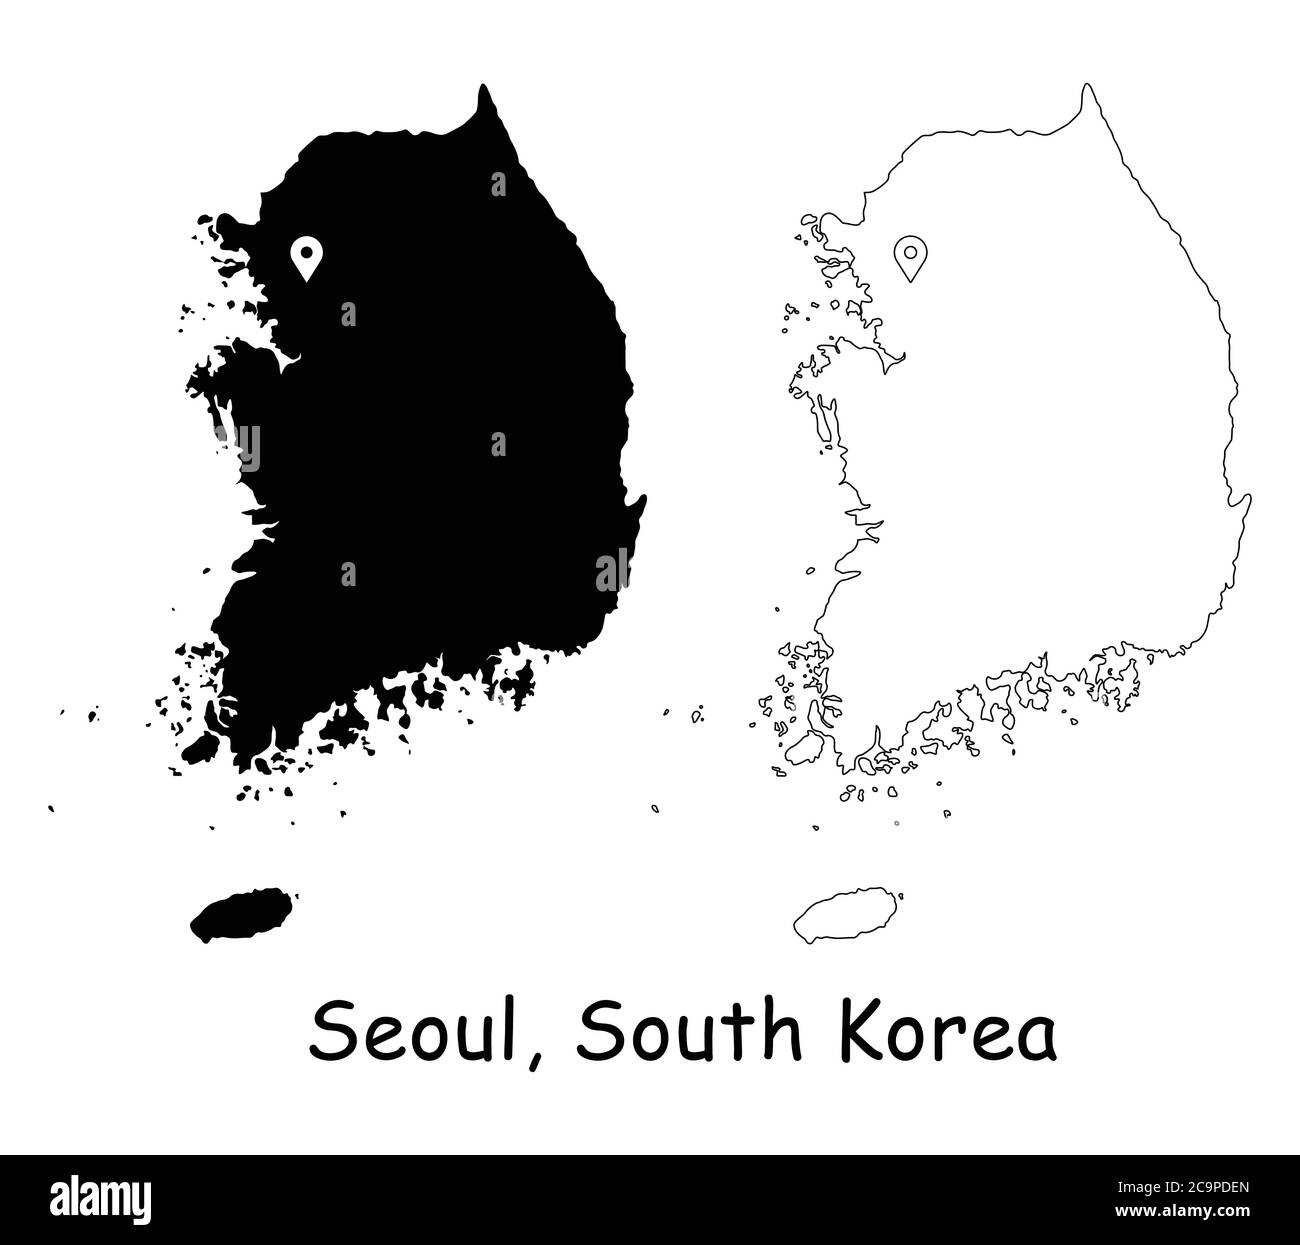 Seoul, Corea del Sud. Mappa dettagliata del Paese con il pin della posizione sulla città capitale. Silhouette nera e mappe di contorno isolate su sfondo bianco. Vettore EPS Illustrazione Vettoriale